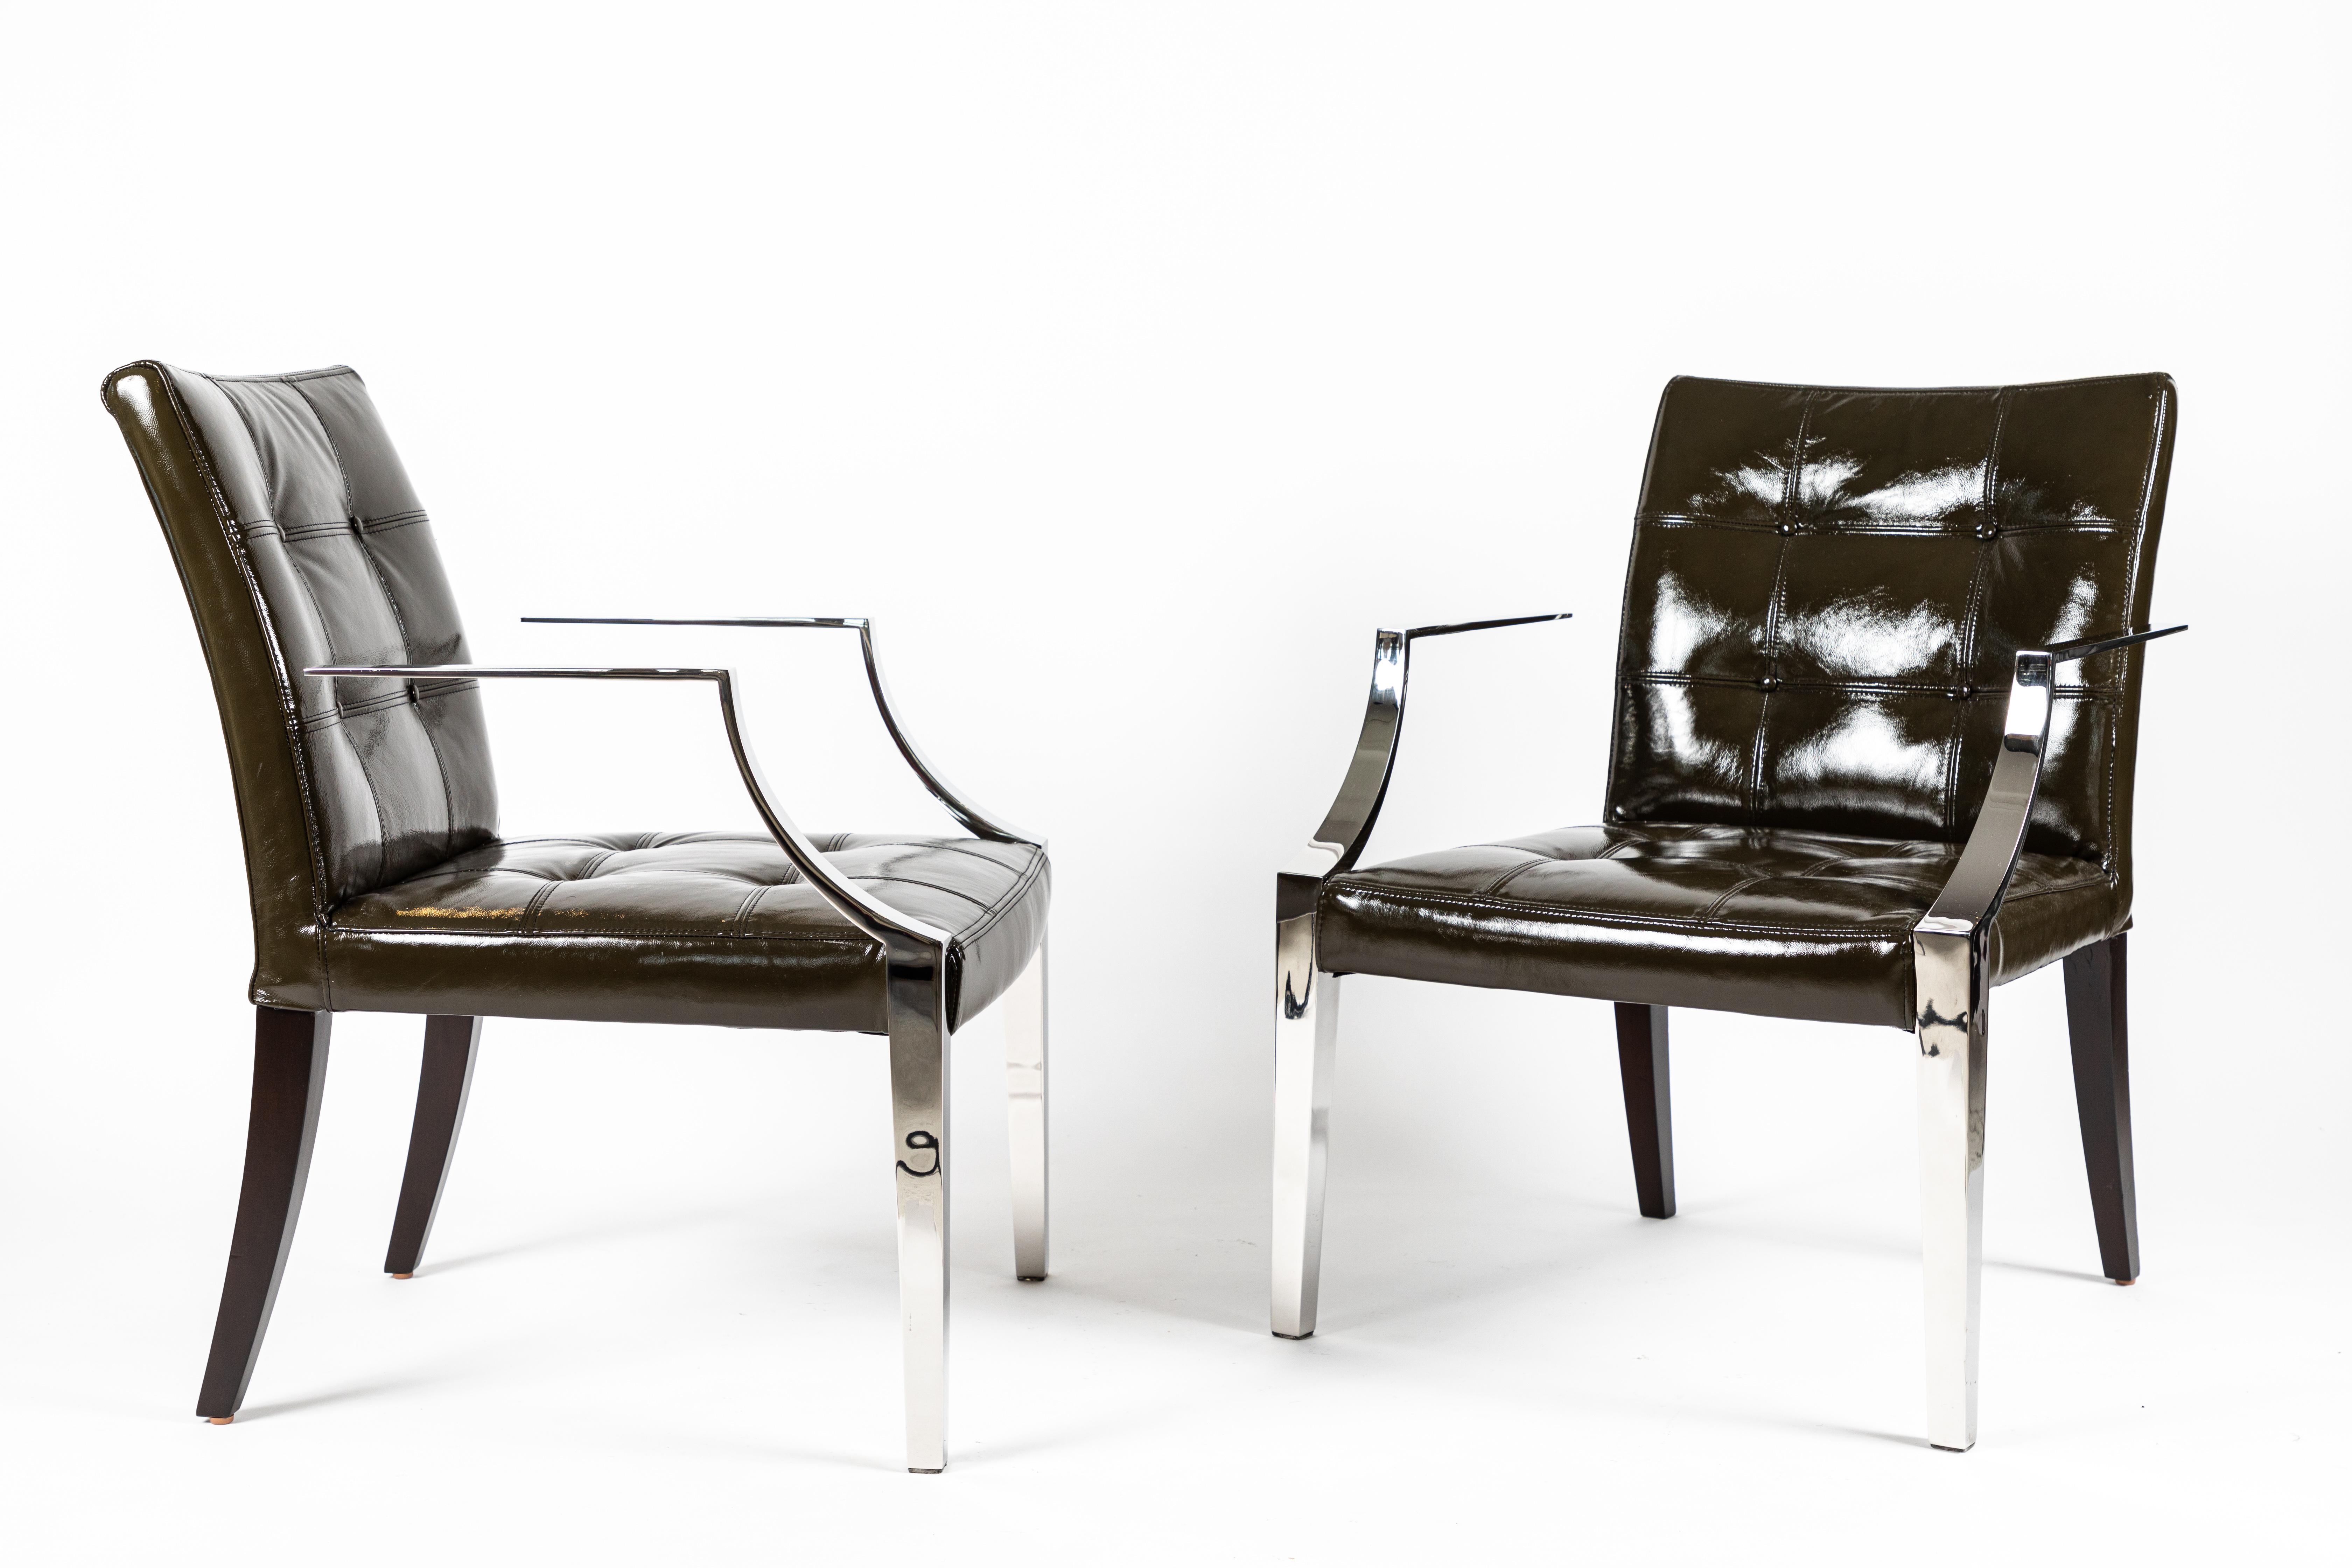 Ein schickes Paar Monseigneur-Stühle vom Meister des 20. Jahrhunderts Philippe Starck. Es wurde vom SLS Hotel in Beverly Hills nach einer umfassenden Renovierung erworben. Die Stühle wurden neu mit einem dunkelolivgrünen Lackleder bezogen und die